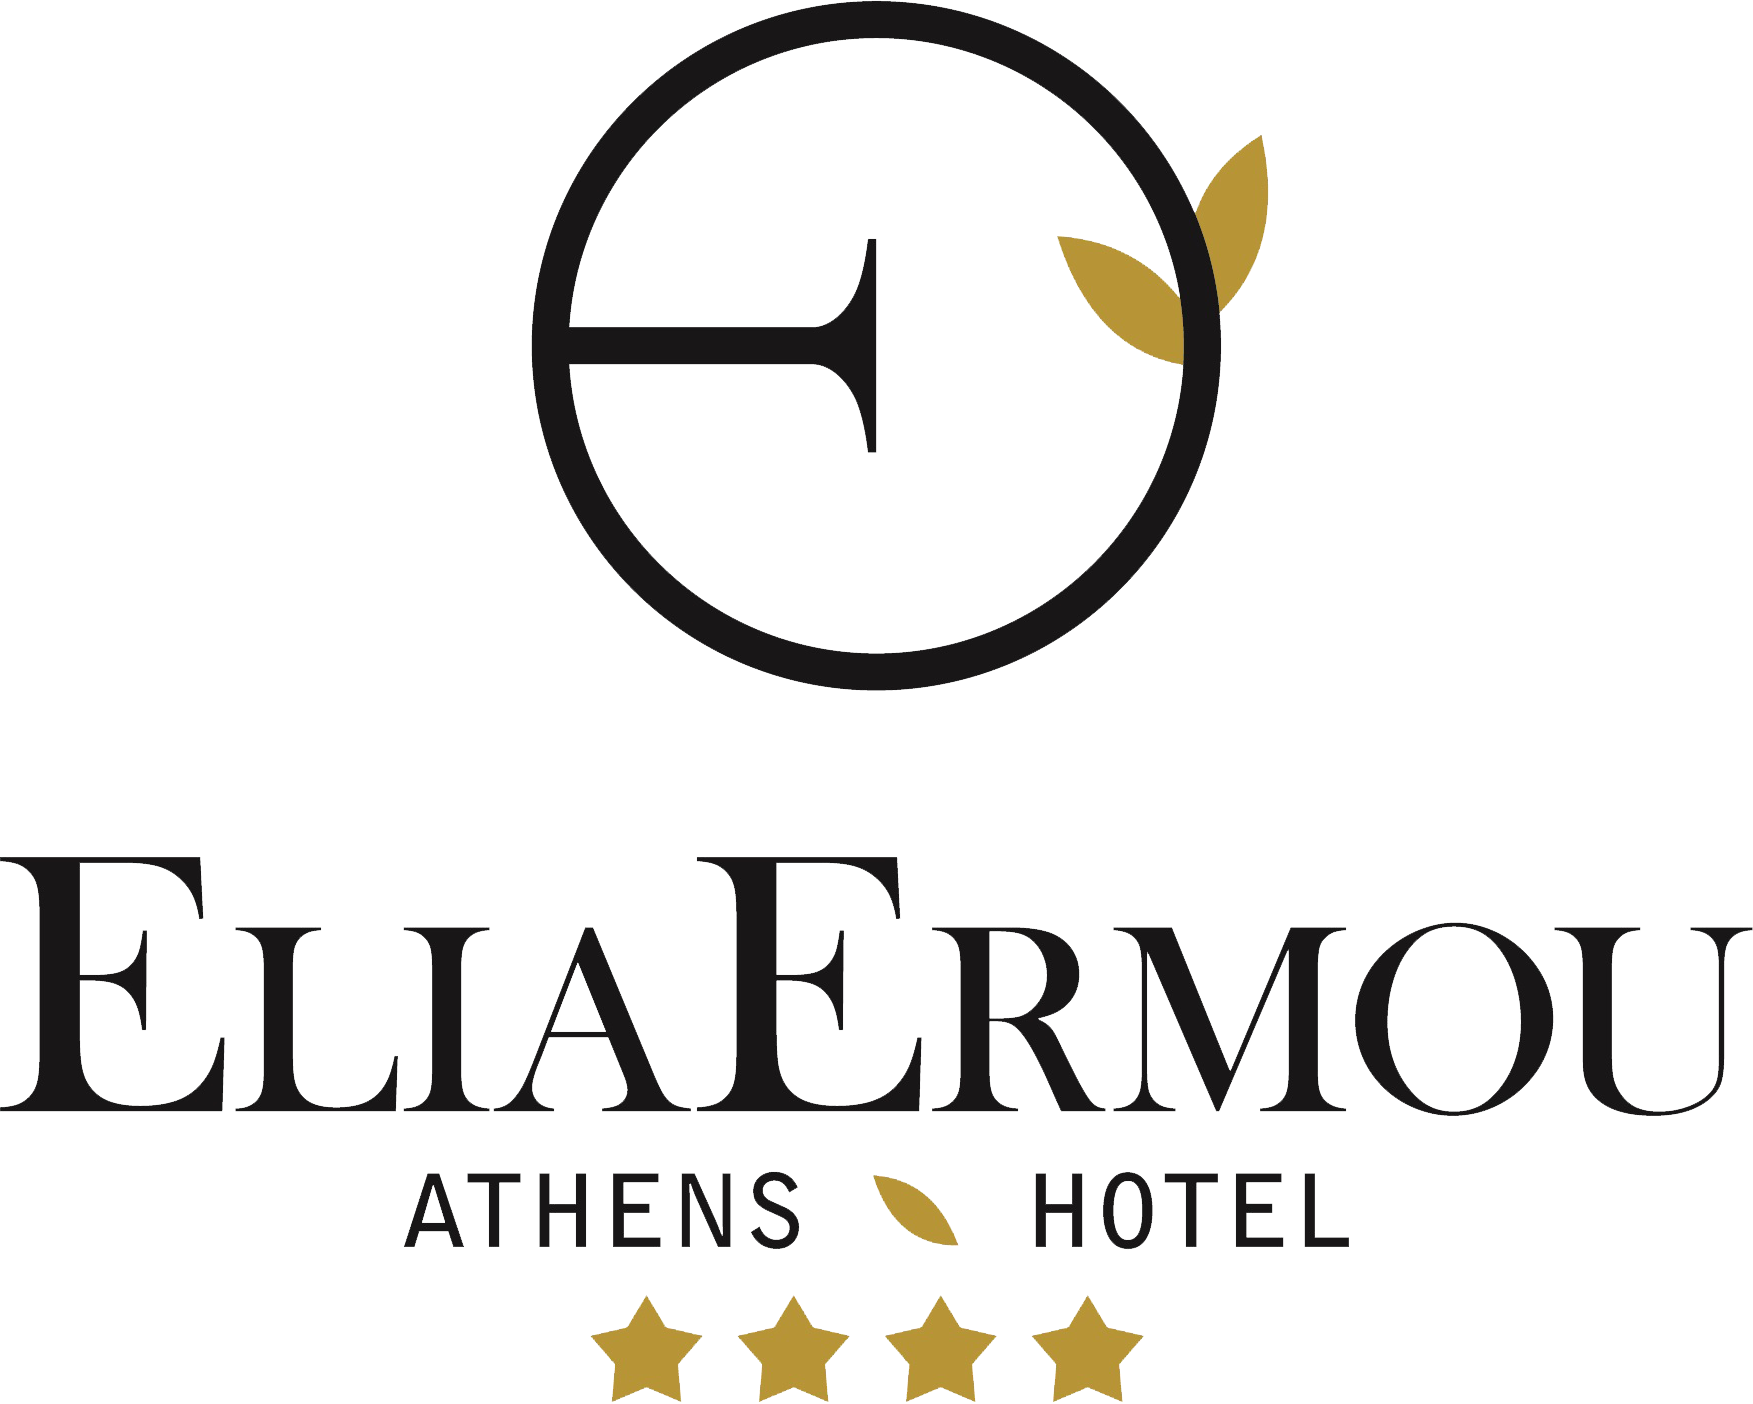 elia ermou athens hotel logo